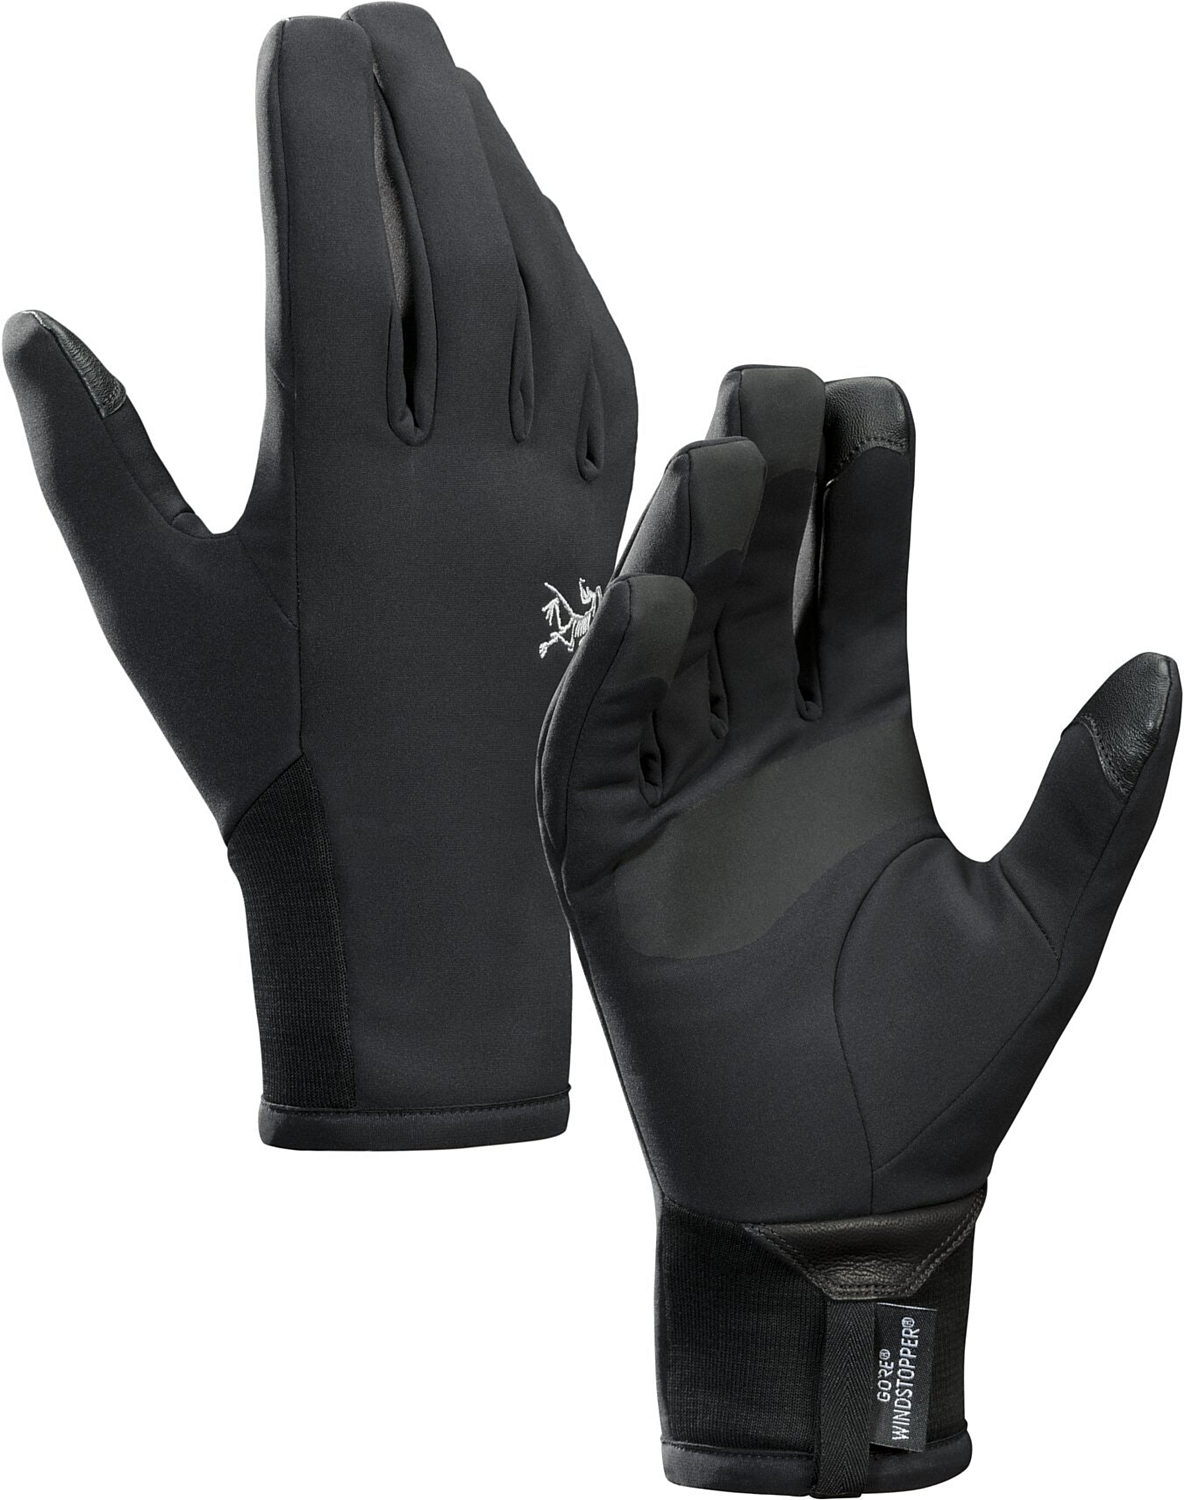 Перчатки горные Arcteryx 2020-21 Venta glove Black